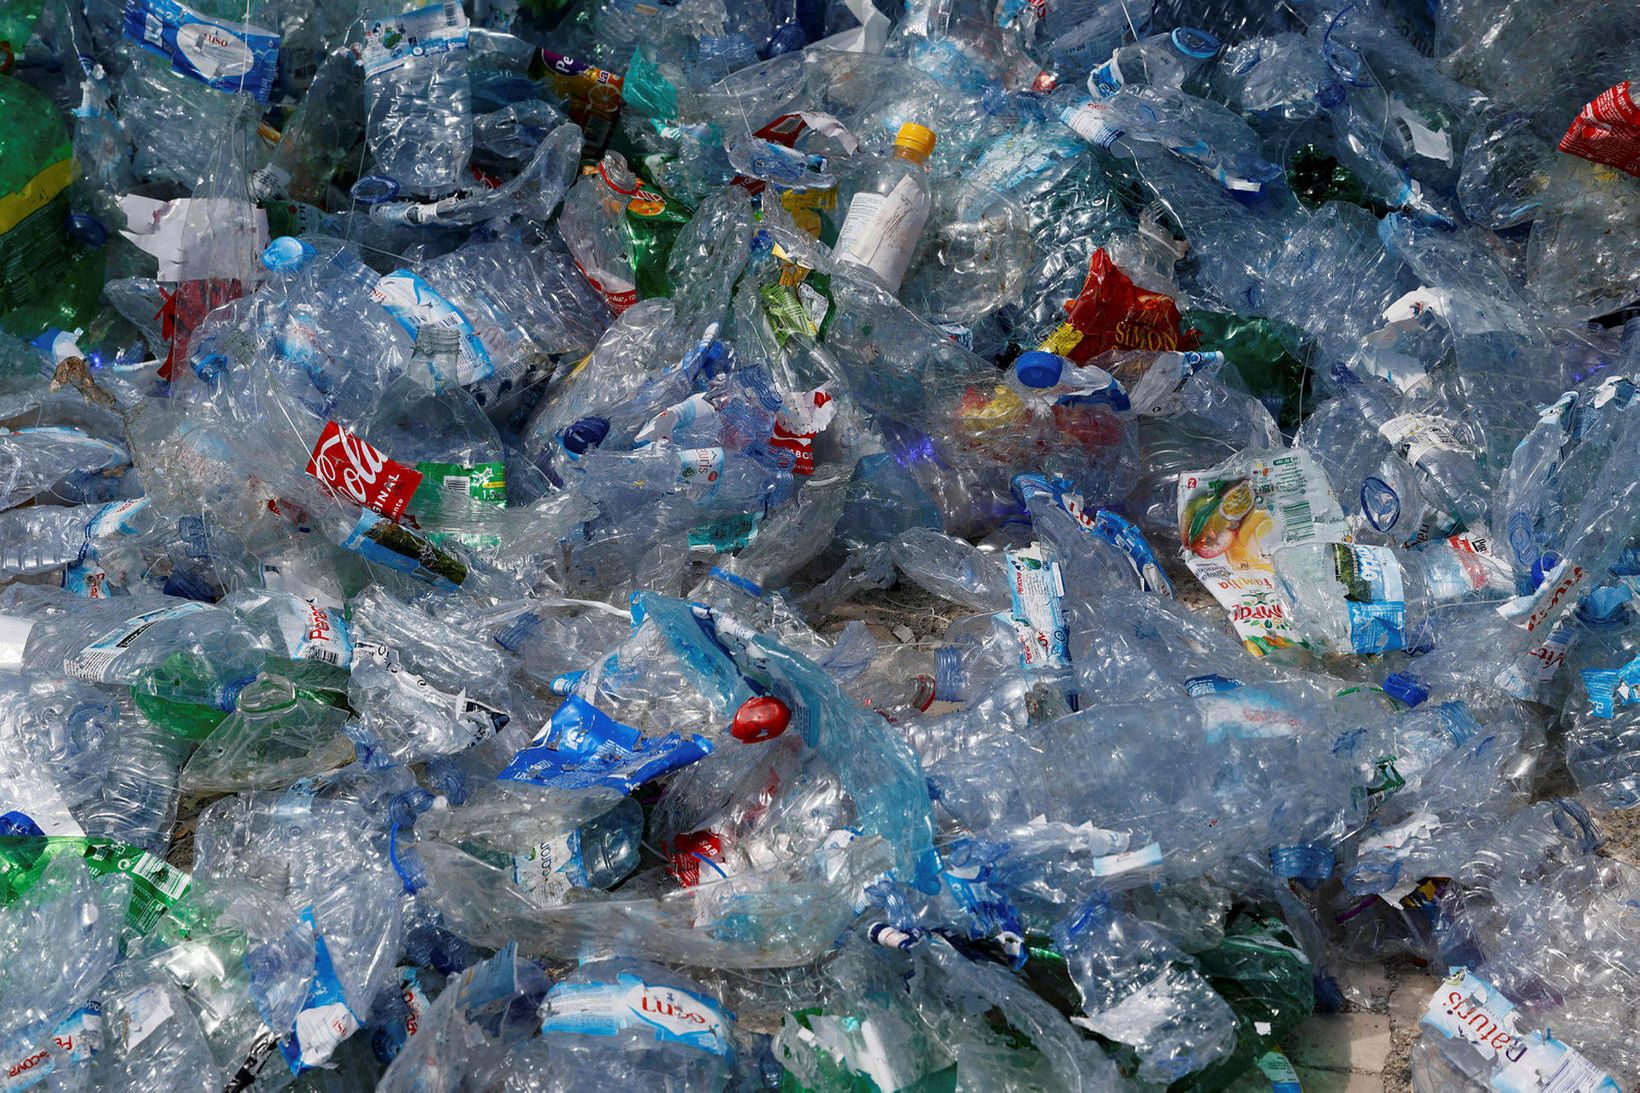 Milljónir tonna af plasti er framleitt á hverju ári.